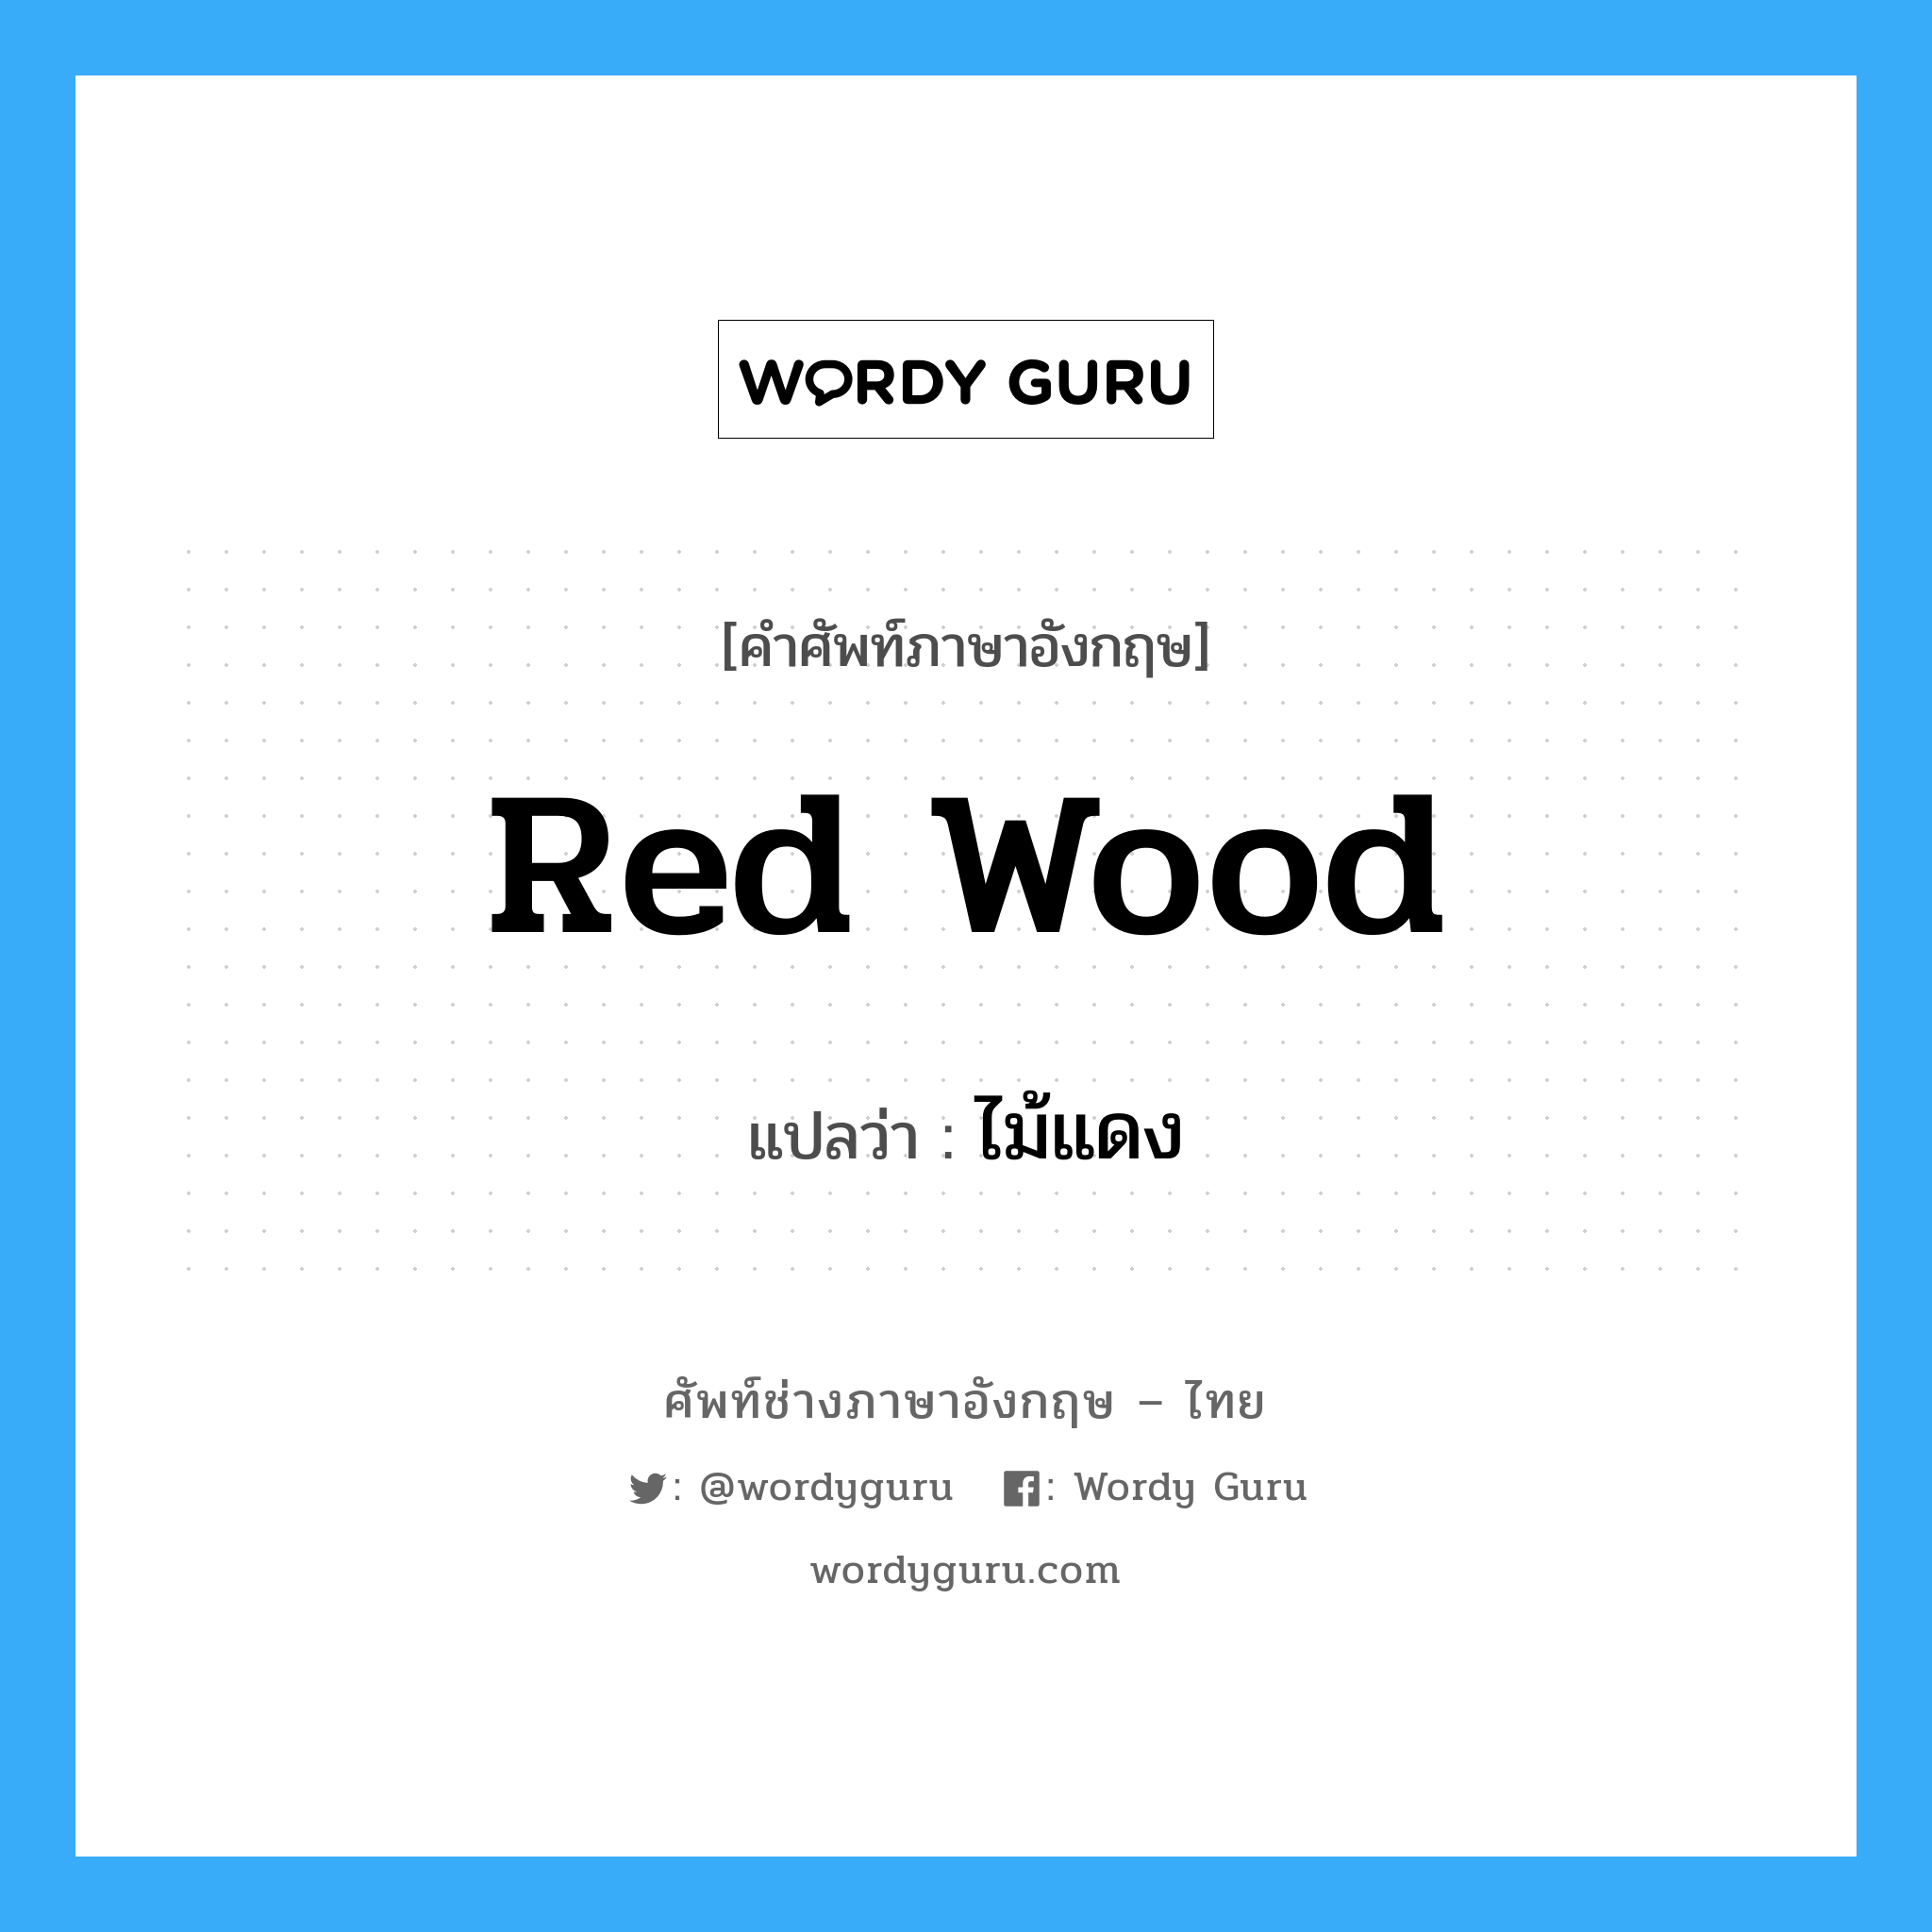 red wood แปลว่า?, คำศัพท์ช่างภาษาอังกฤษ - ไทย red wood คำศัพท์ภาษาอังกฤษ red wood แปลว่า ไม้แดง